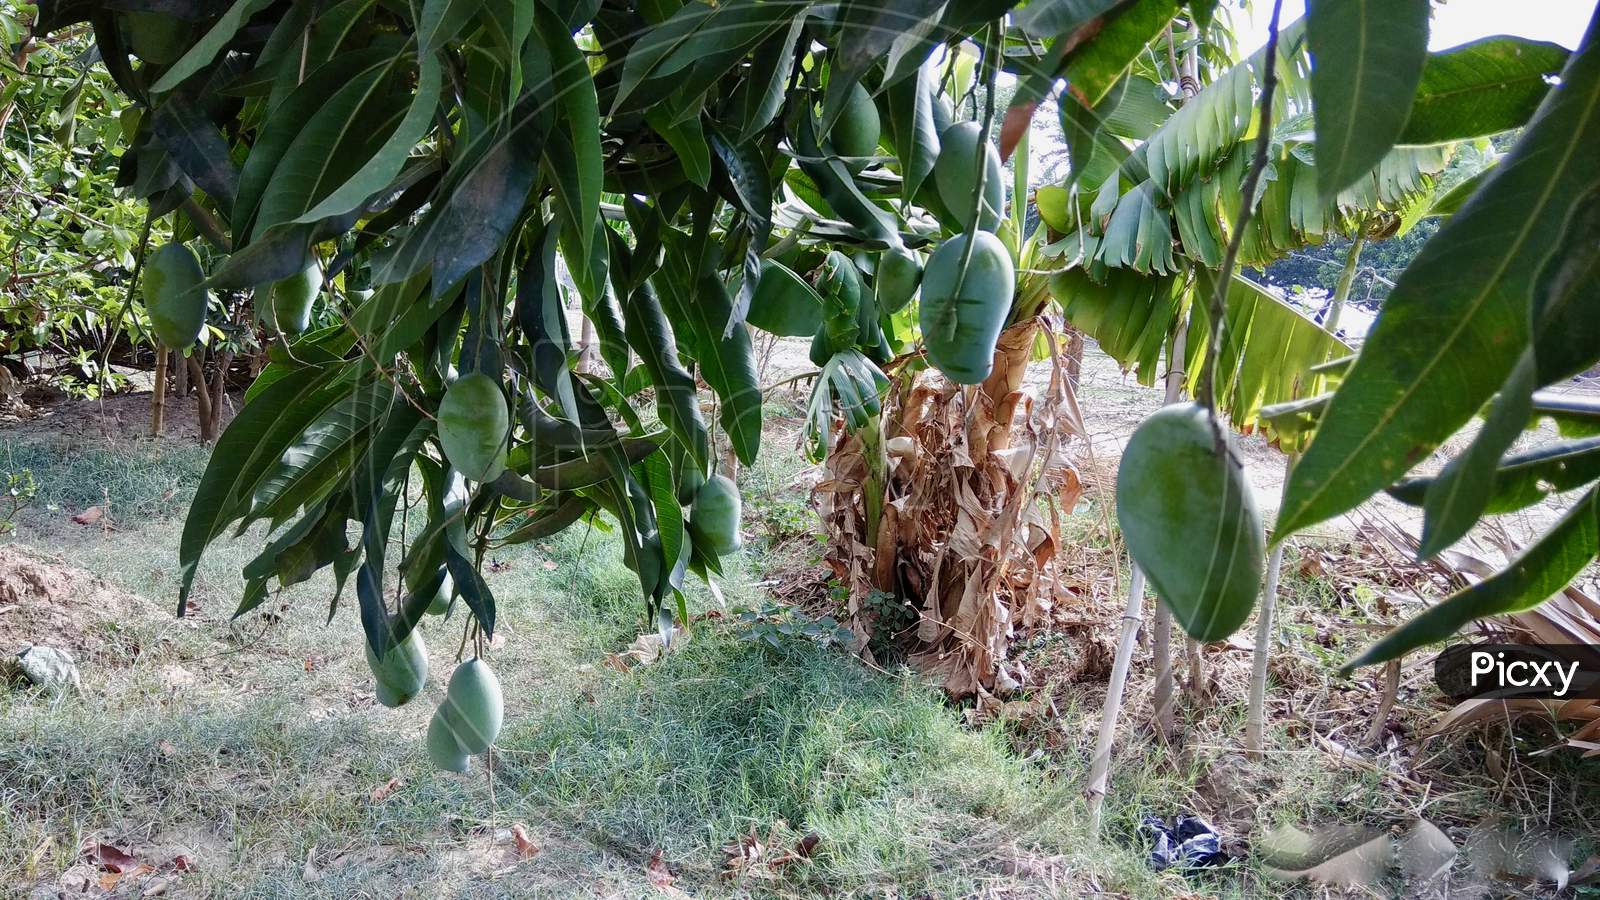 Green Raw Mango Growing on Tree